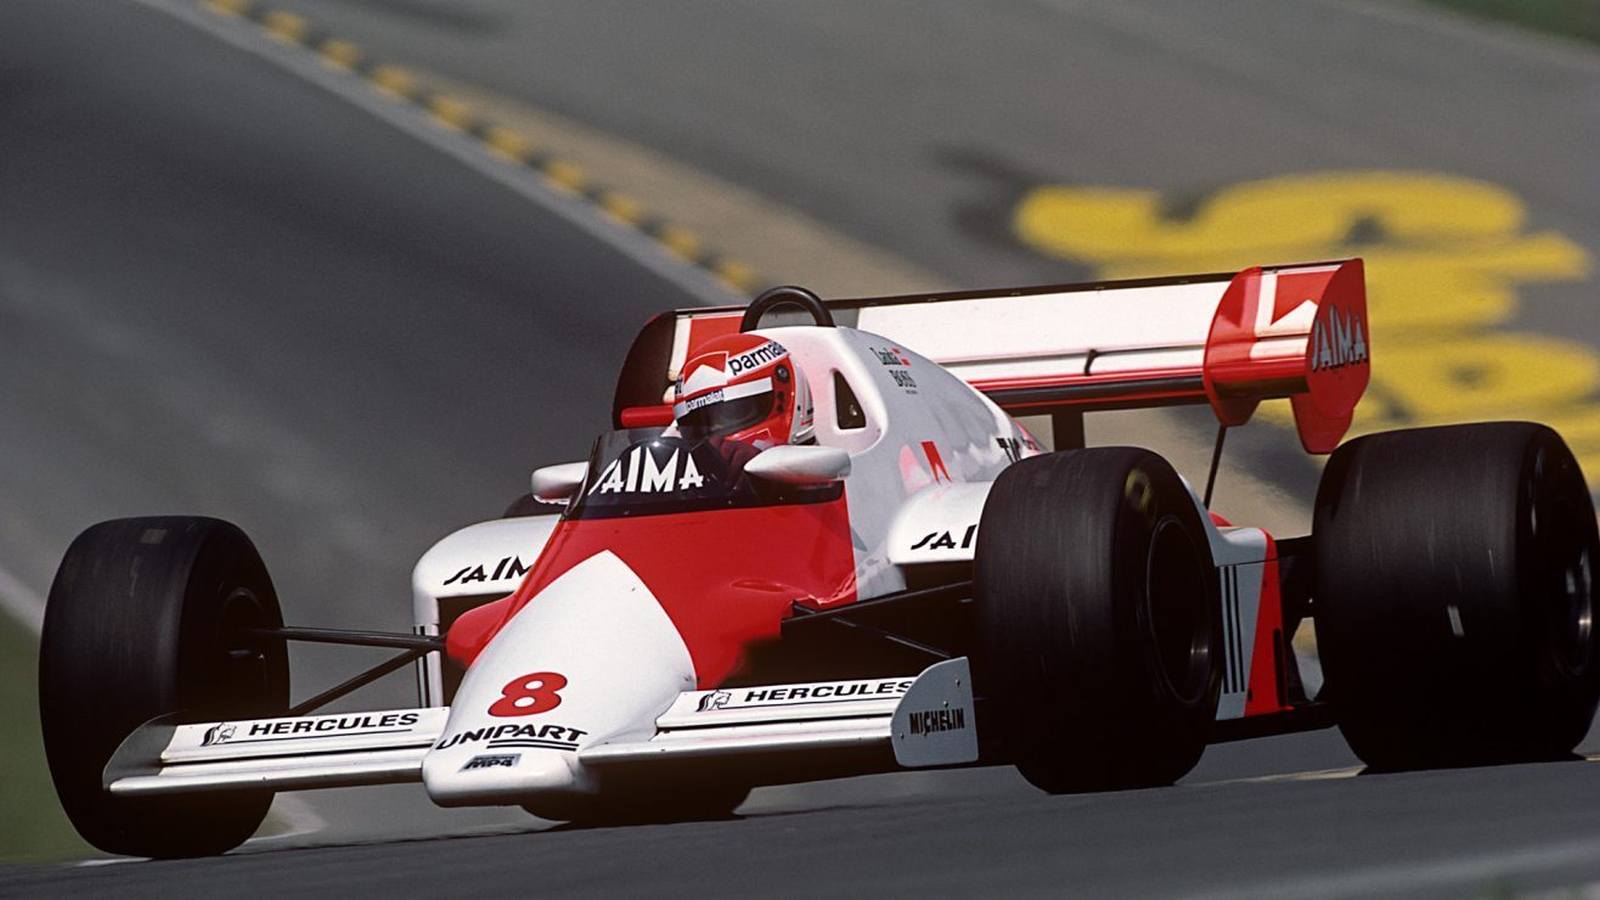 Nove anos depois do bi, Niki Lauda, agora na McLaren, saiu com o tricampeonato. Apenas 0.5 ponto separou ele de Alain Prost